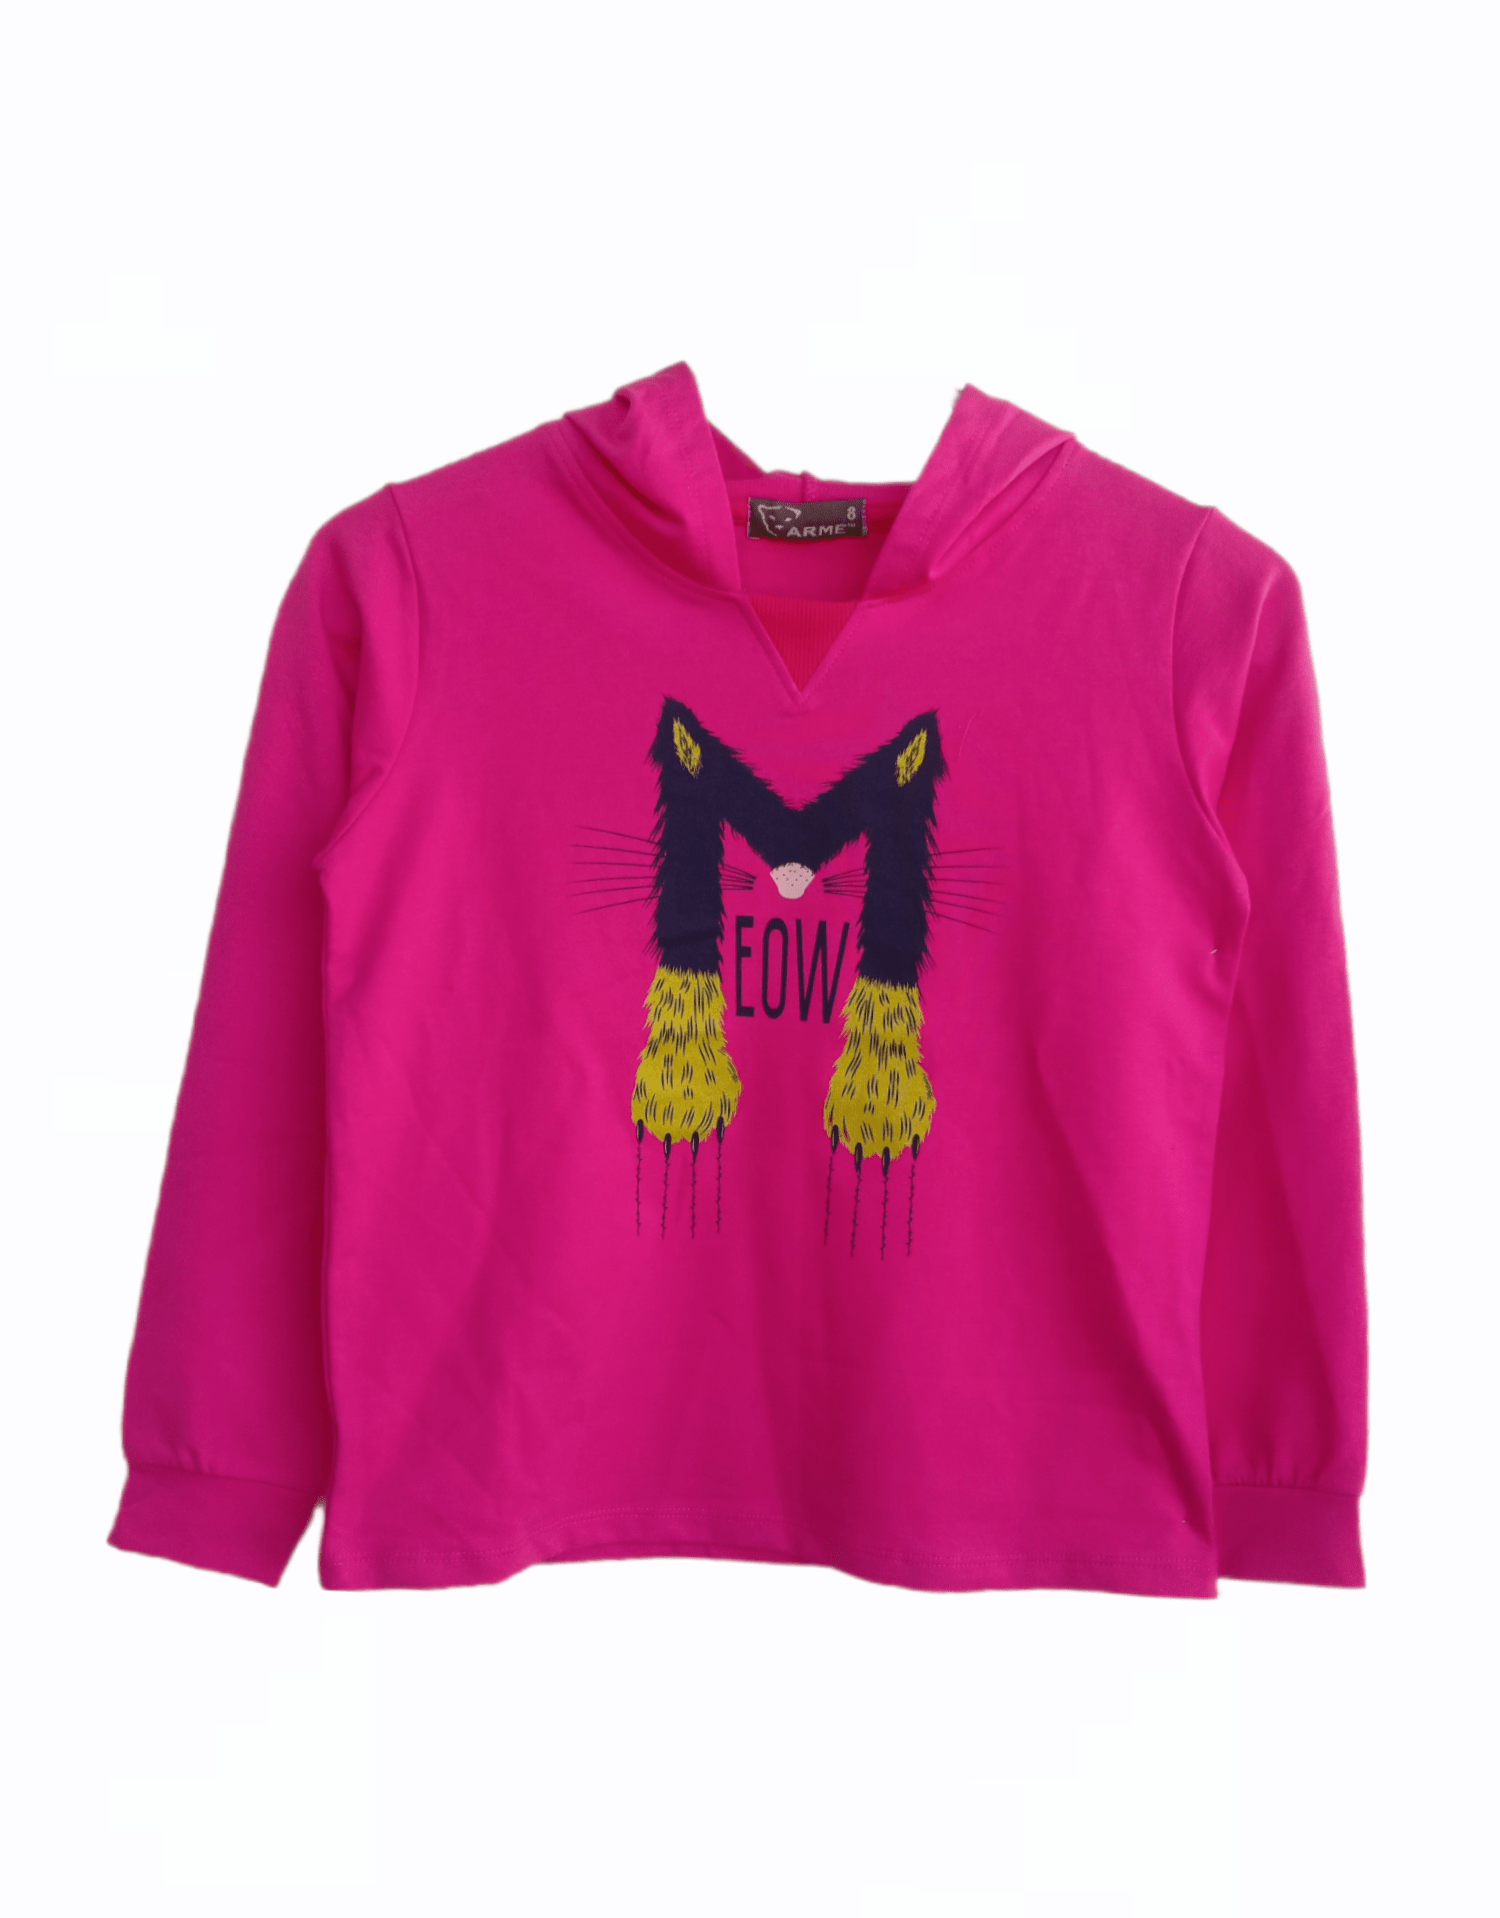 ElOutlet Kids Sweatshirts Size 8(6-7 years) Girls Sweatshirt - MEOW - fuchsia